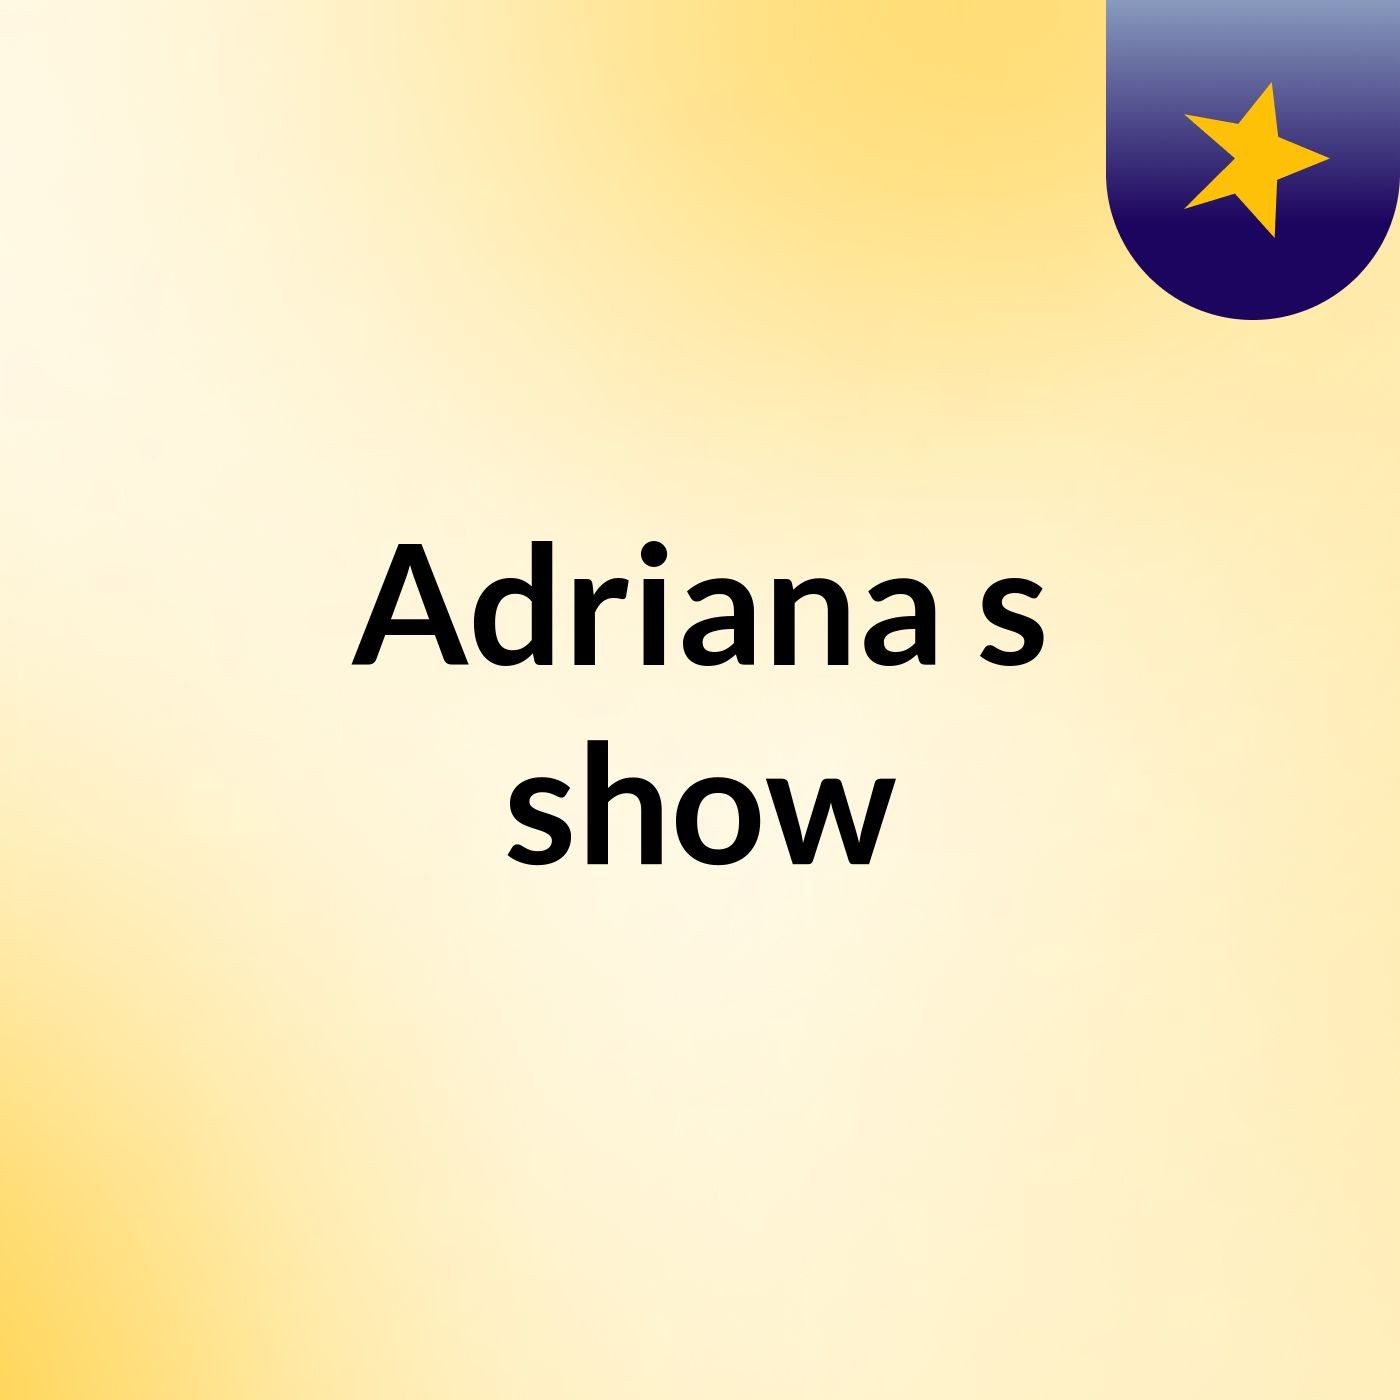 Adriana's show